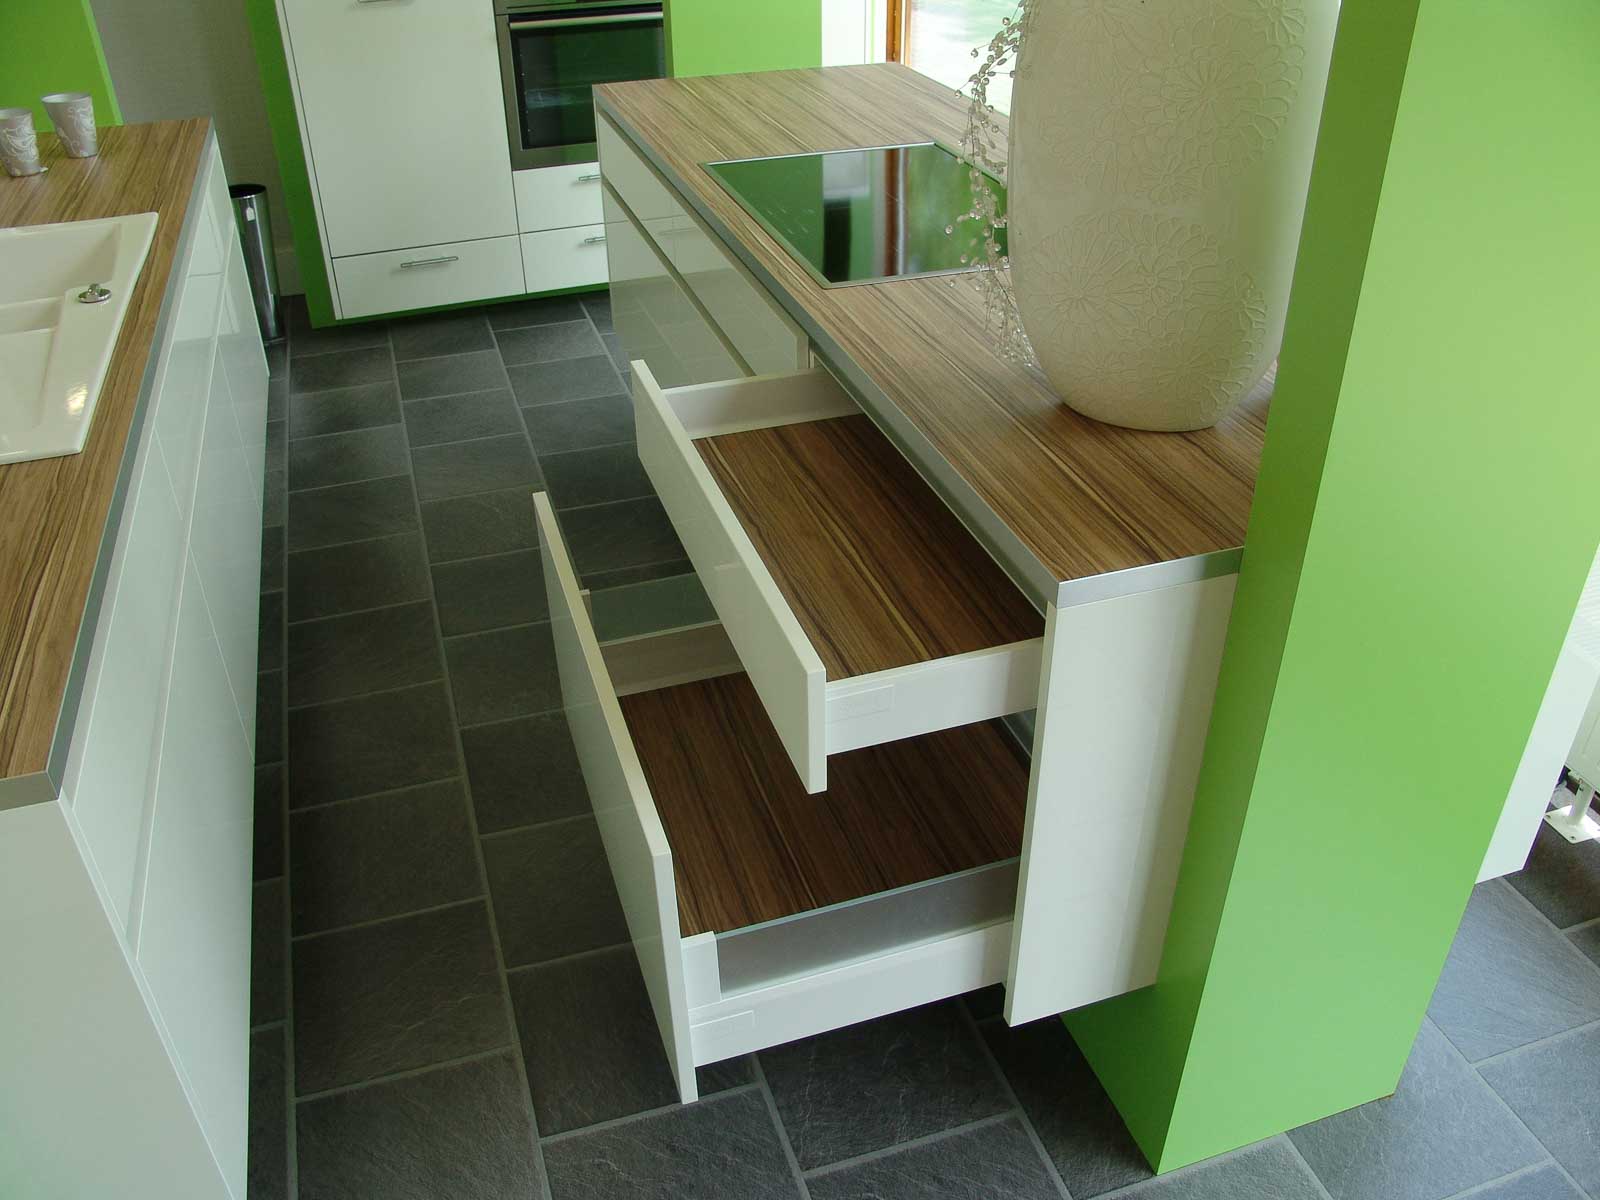 Jödicke Design - Showroom - Küche grün